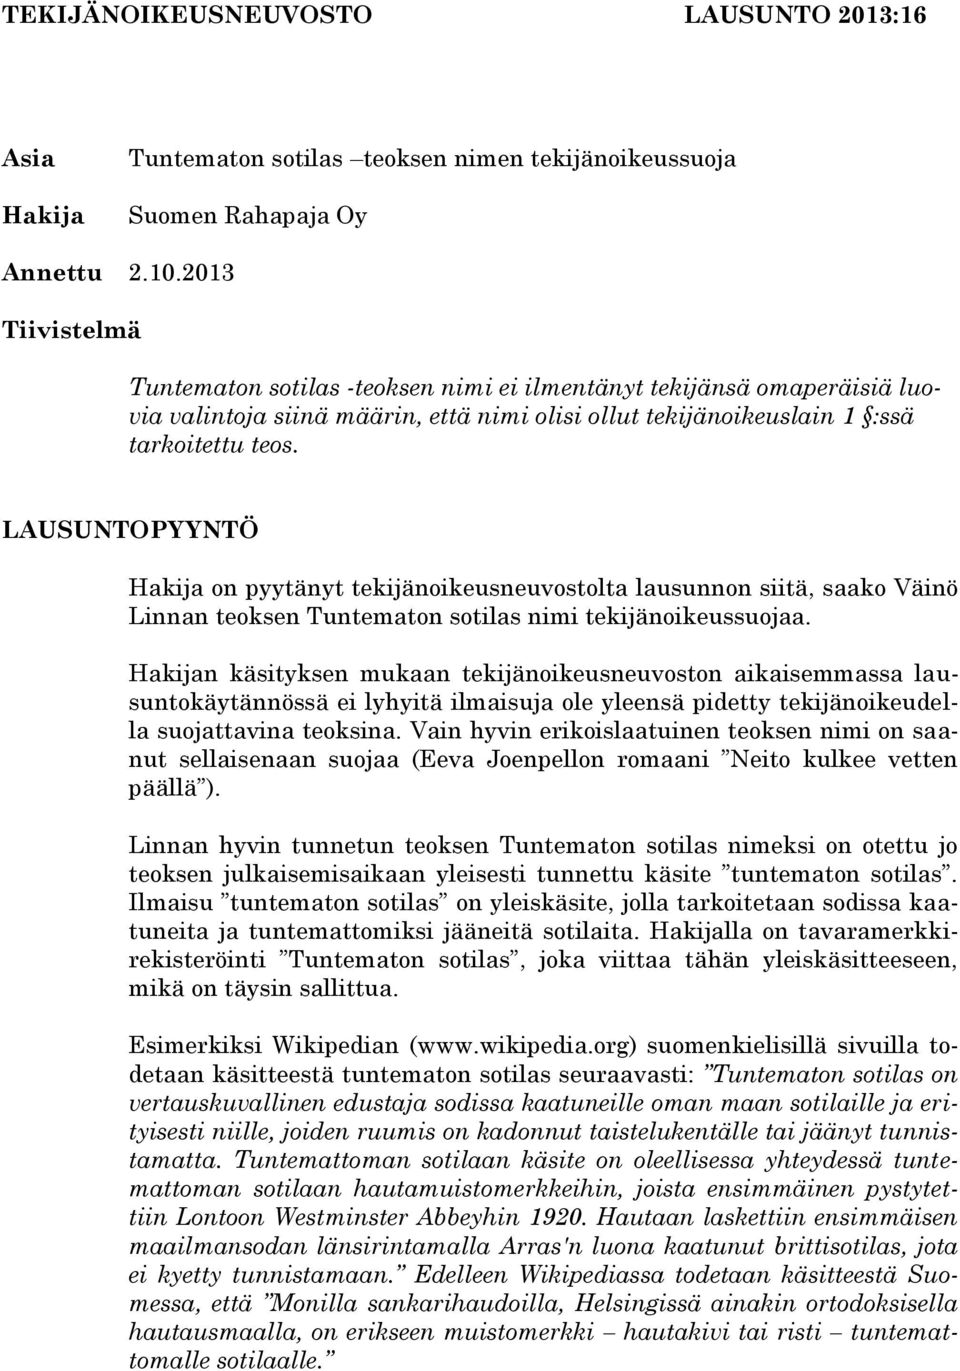 LAUSUNTOPYYNTÖ Hakija on pyytänyt tekijänoikeusneuvostolta lausunnon siitä, saako Väinö Linnan teoksen Tuntematon sotilas nimi tekijänoikeussuojaa.